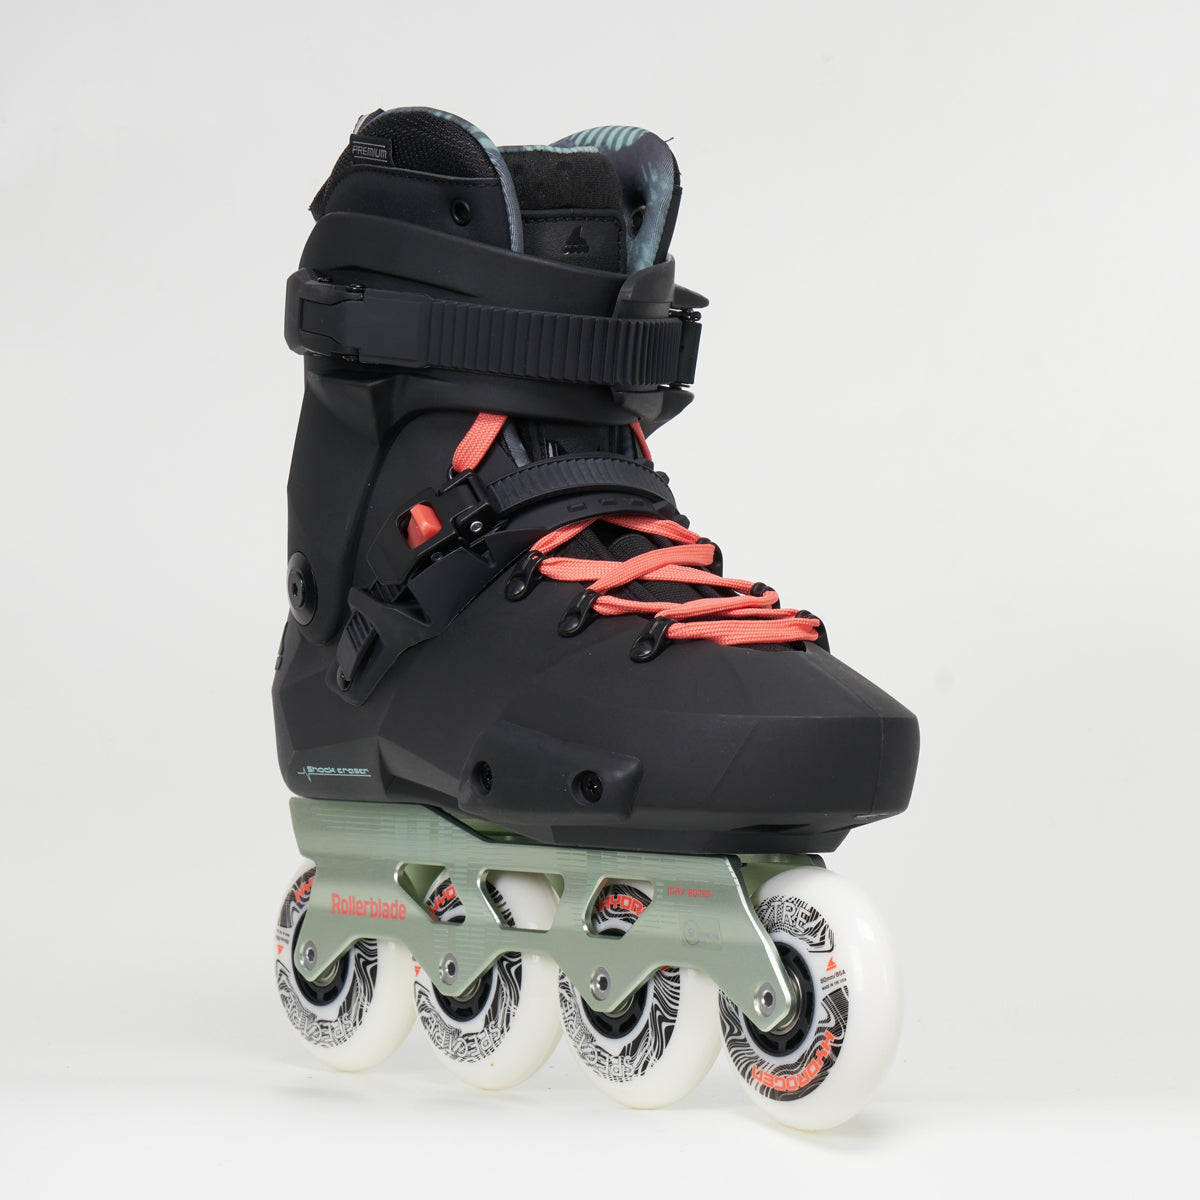 Rollerblade Twister XT W Skates - Black/Mint